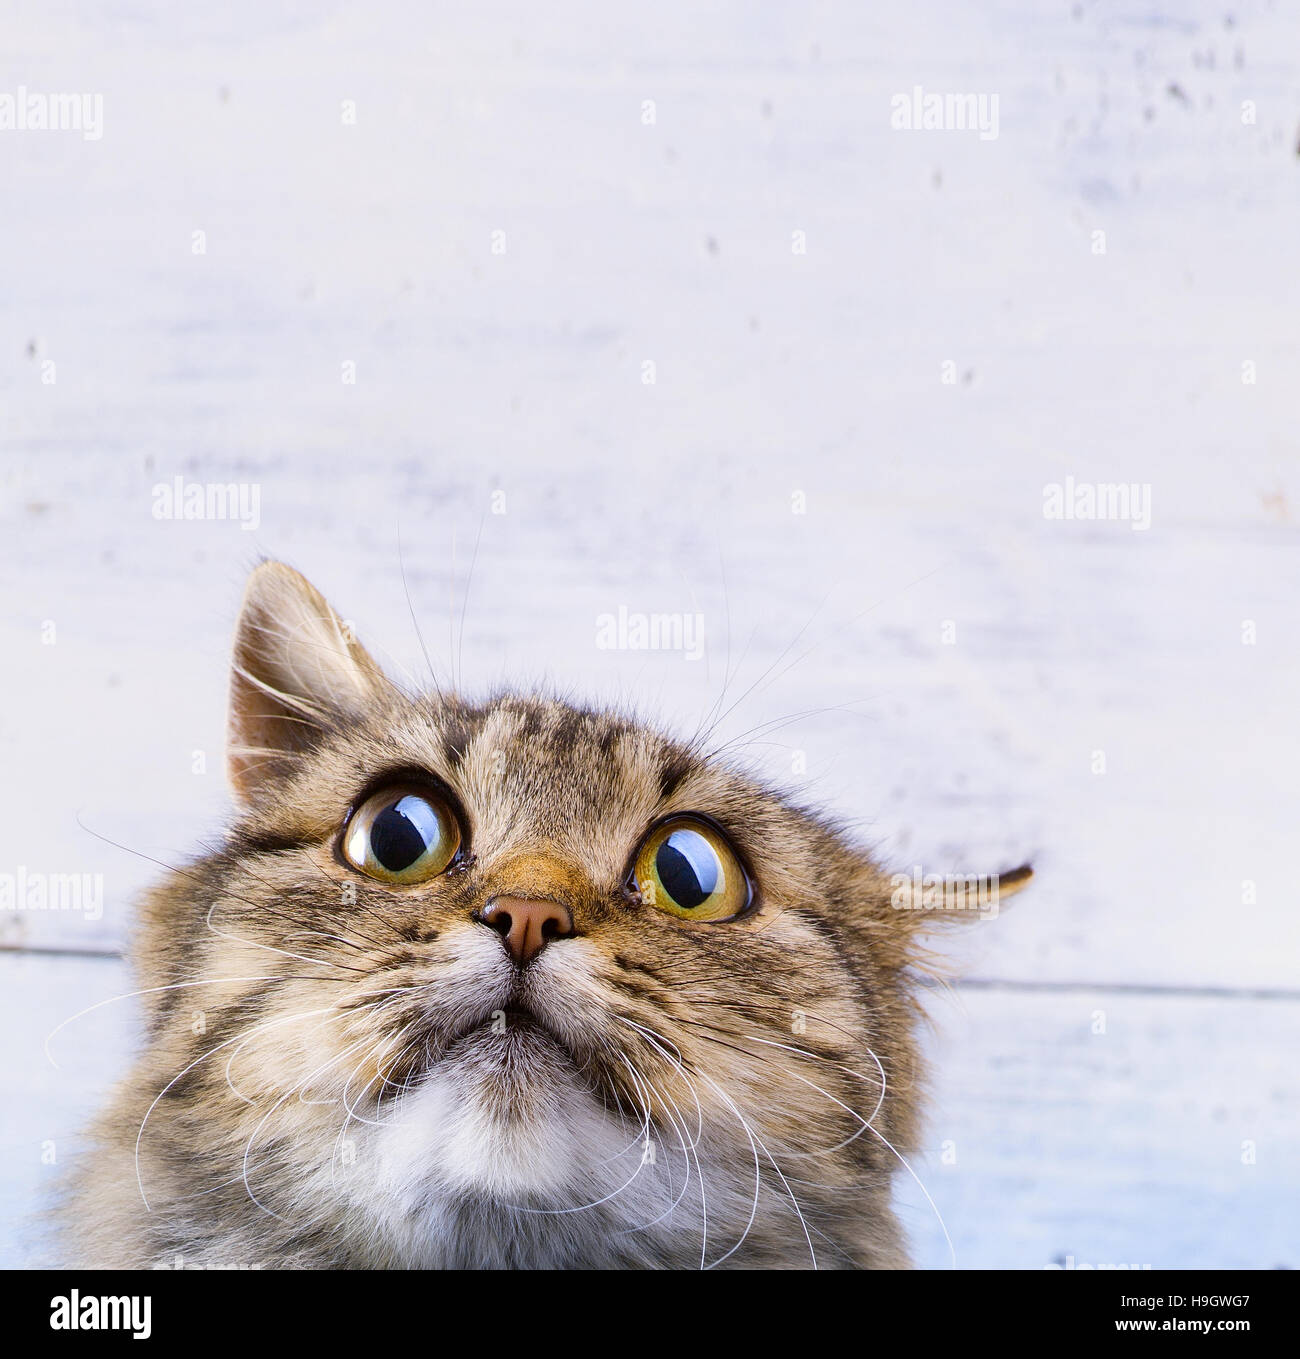 Paura e sorpresa gatto grigio cercando con gli occhi sbarrati su sfondo bianco Foto Stock